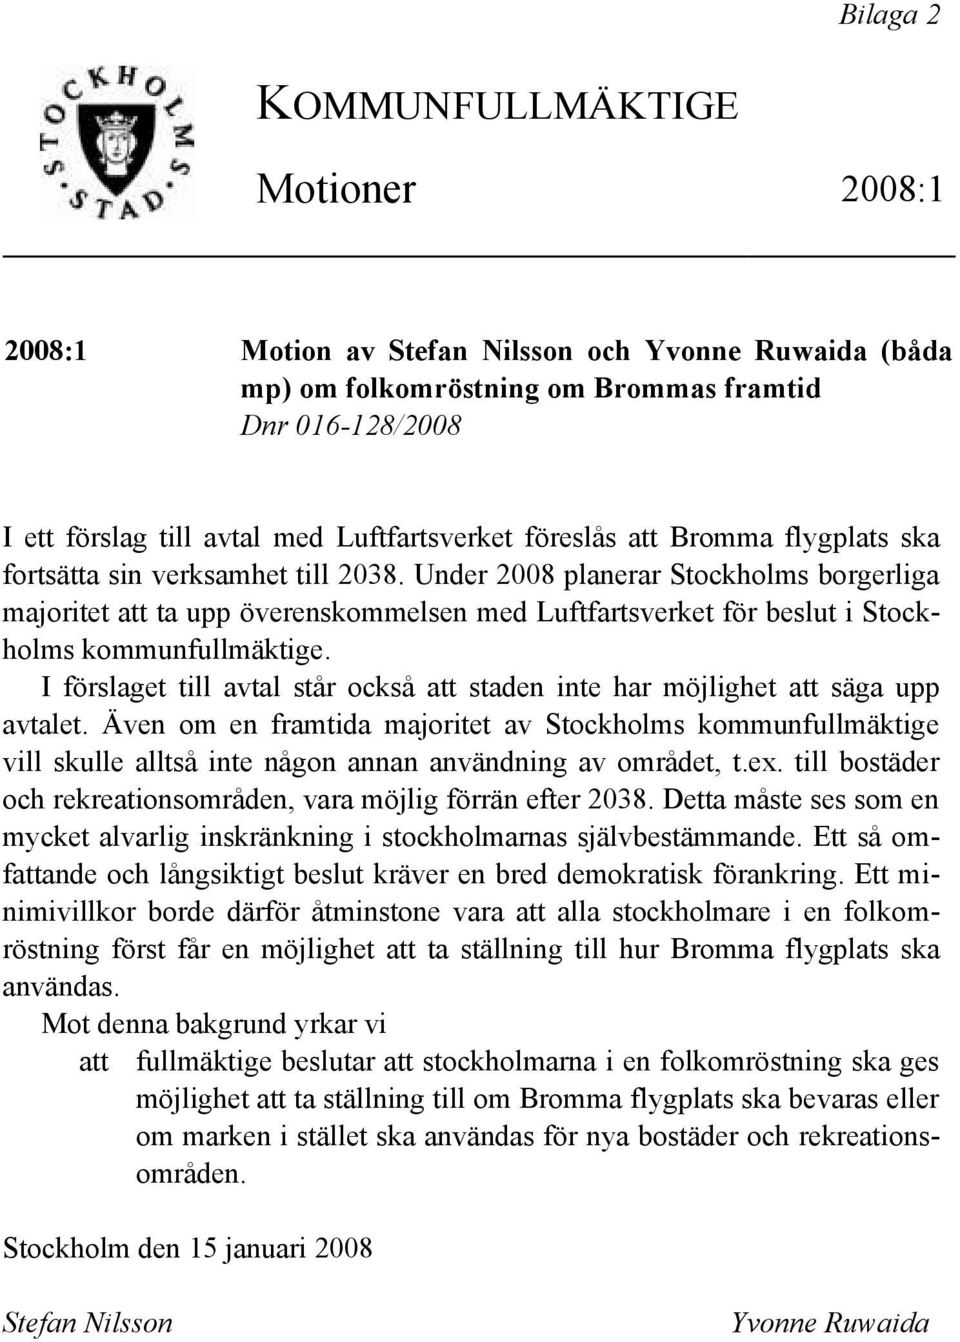 Under 2008 planerar Stockholms borgerliga majoritet att ta upp överenskommelsen med Luftfartsverket för beslut i Stockholms kommunfullmäktige.